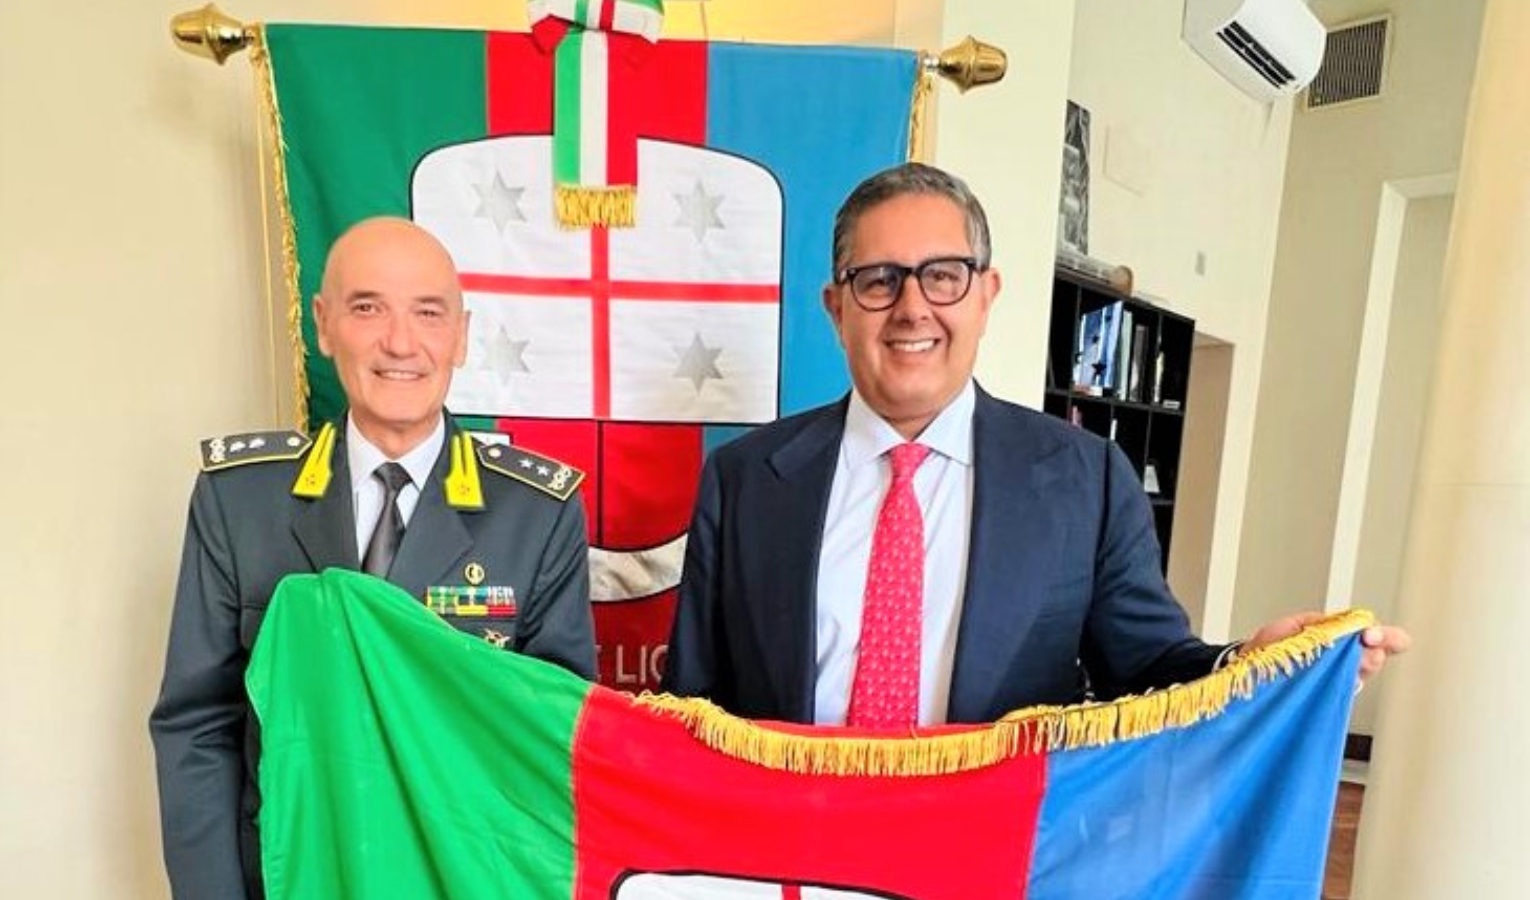 La bandiera della Liguria al comandante della finanza Cristiano Zaccagnini